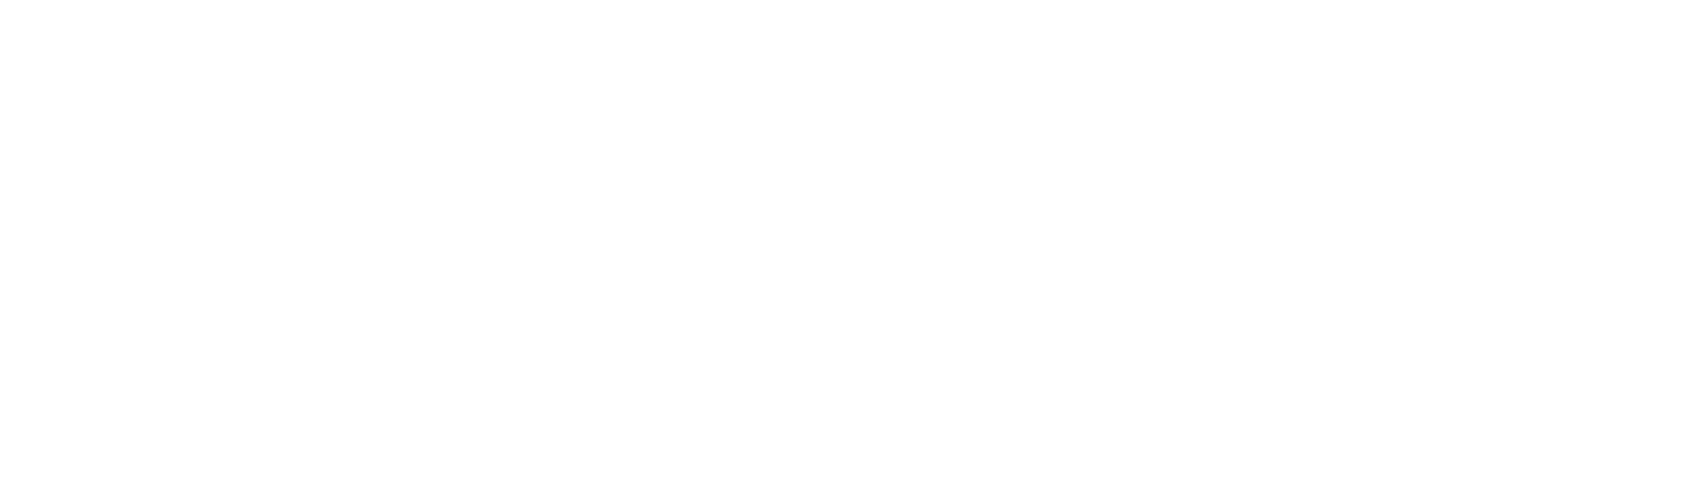 Traton logo pour fonds sombres (PNG transparent)